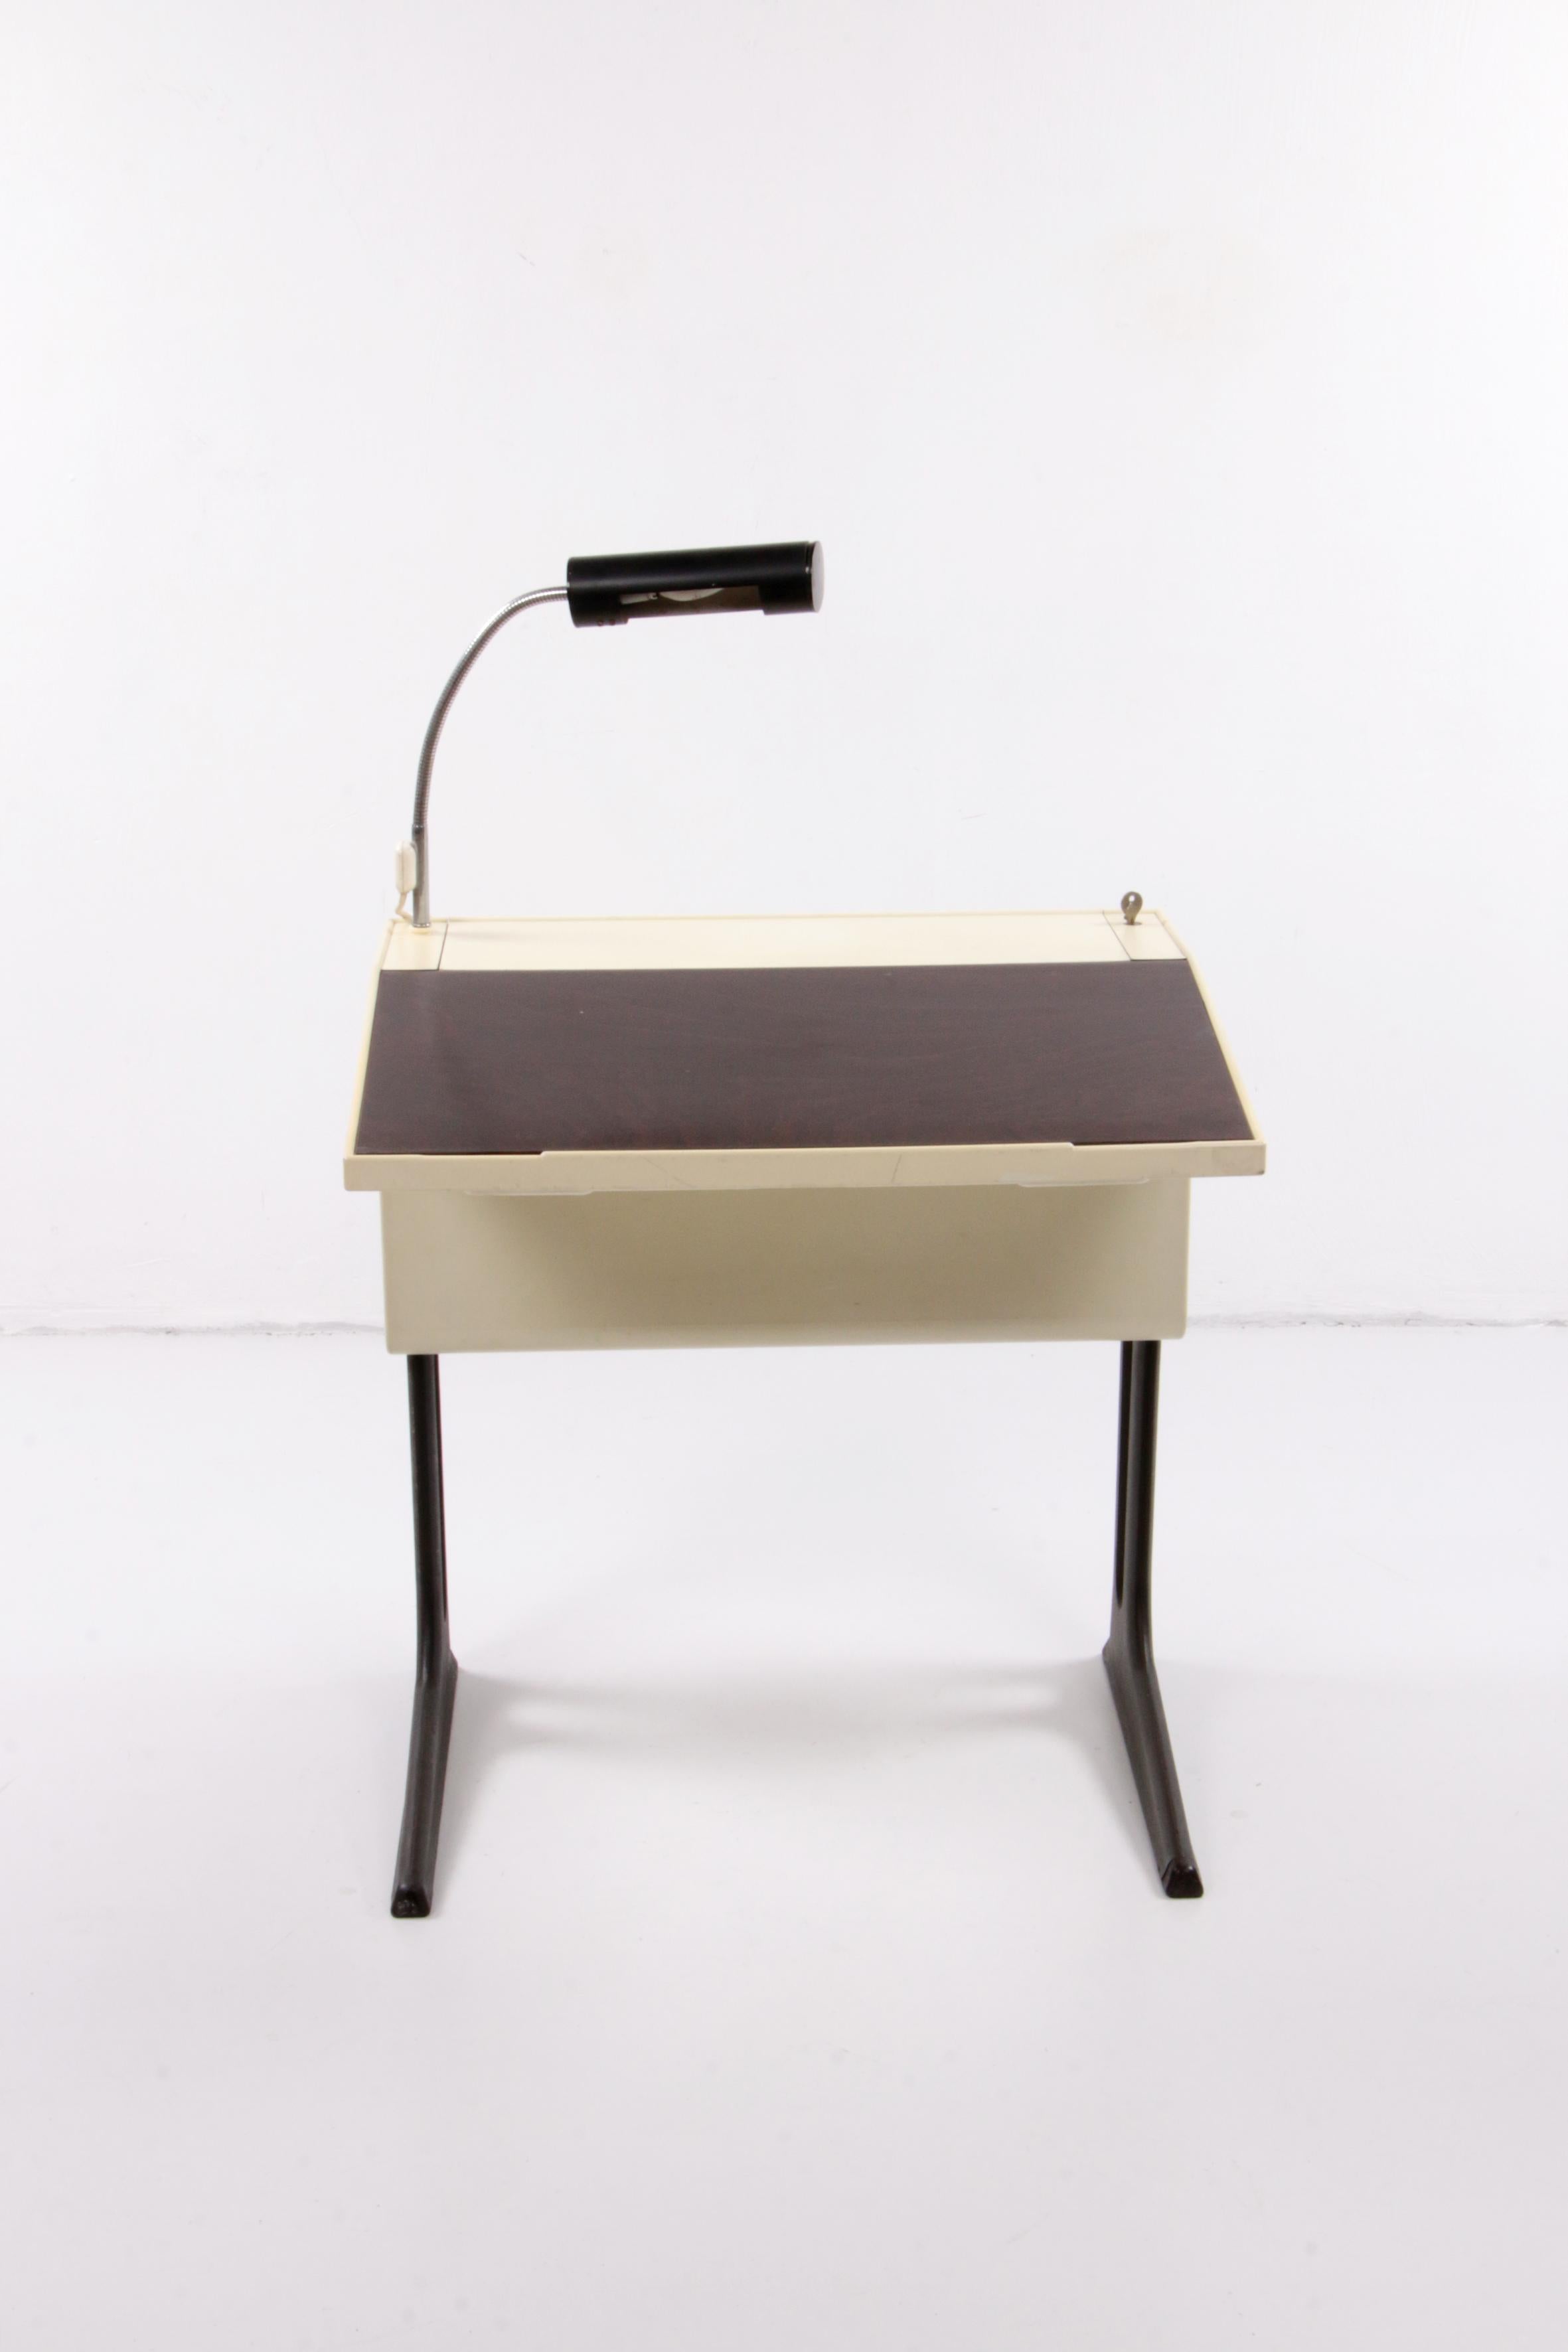 Flötotto Adjustable Desk Design by Luigi Colani, 1970, Germany 1